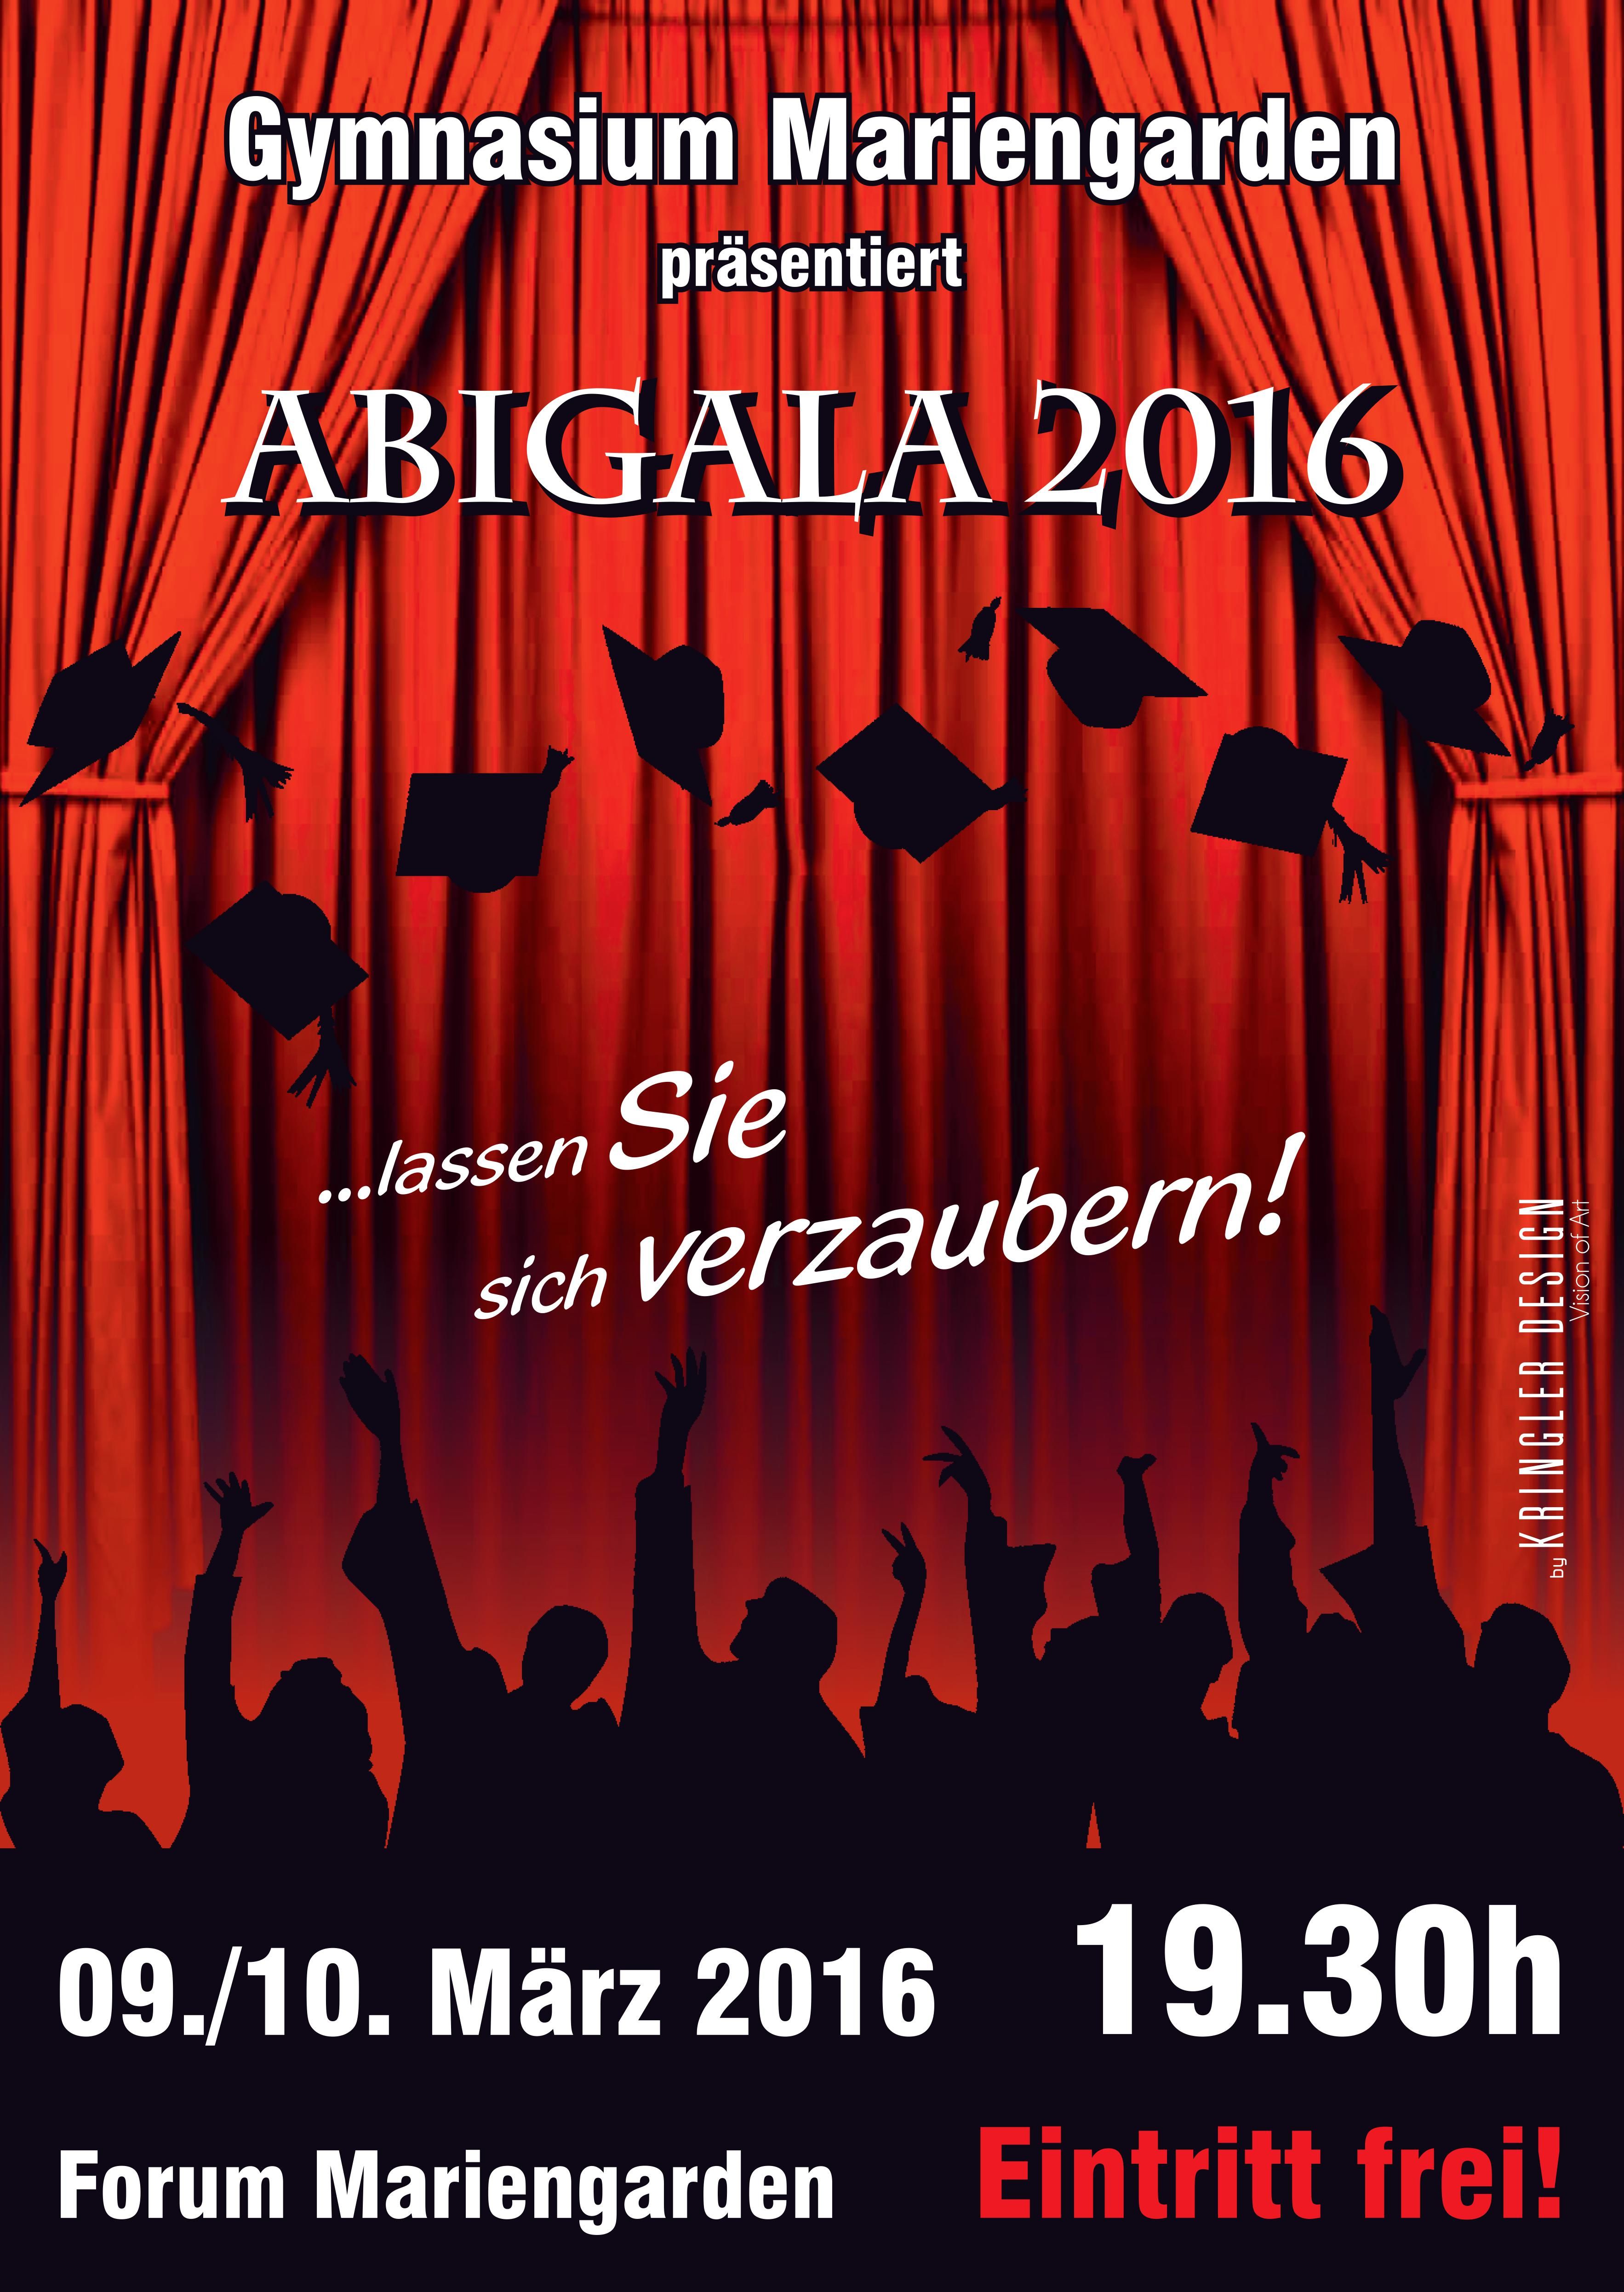 abigala2016